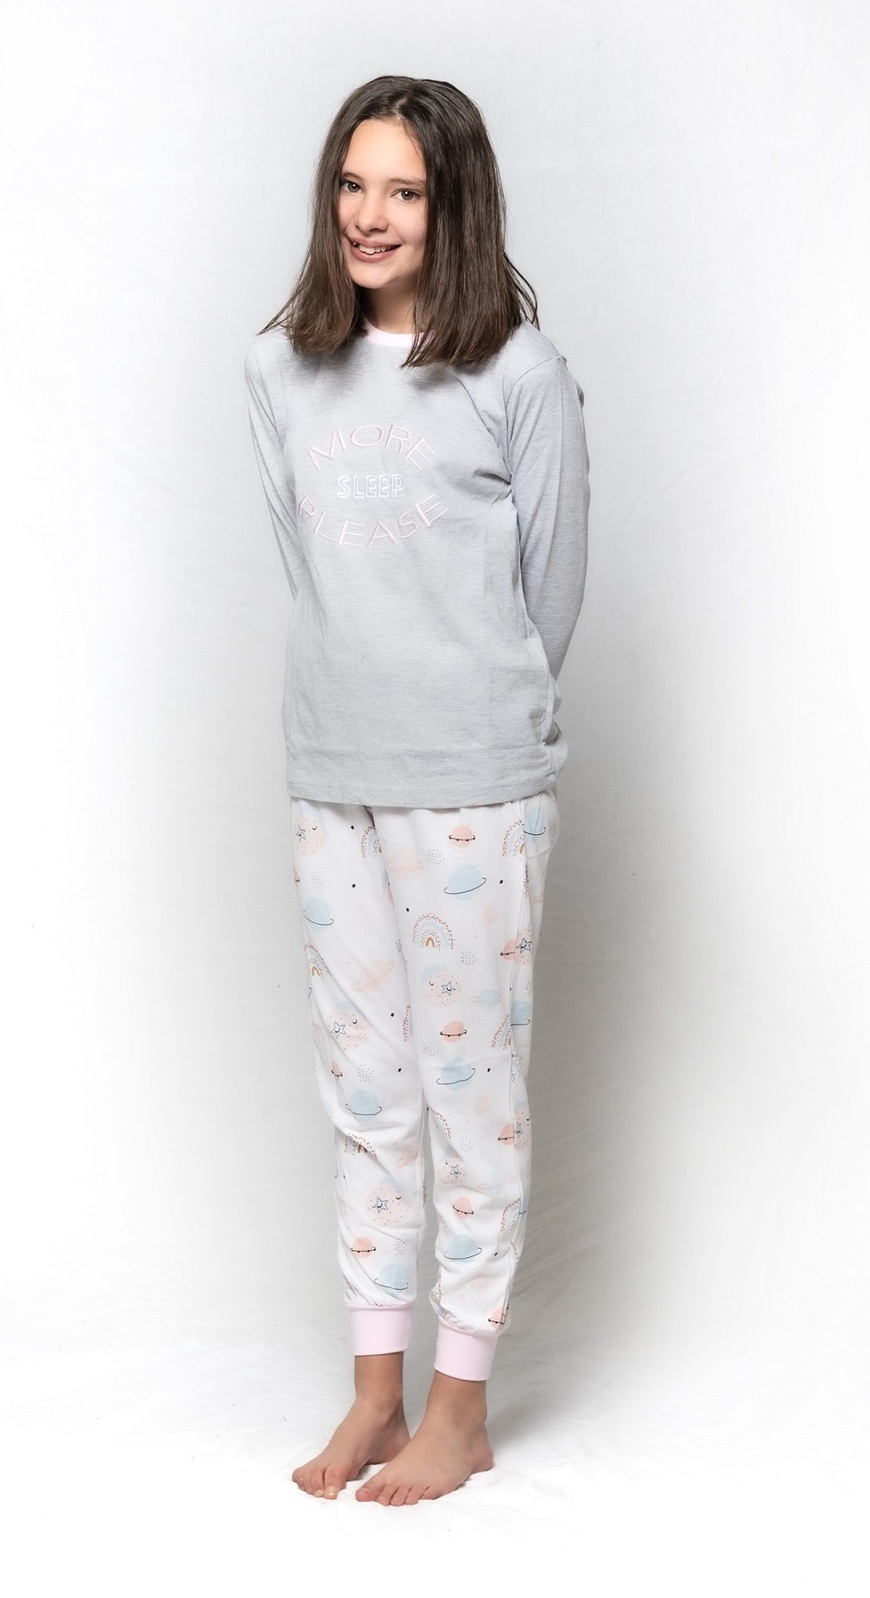 Girls' Sleepwear, Pajama Sets & More